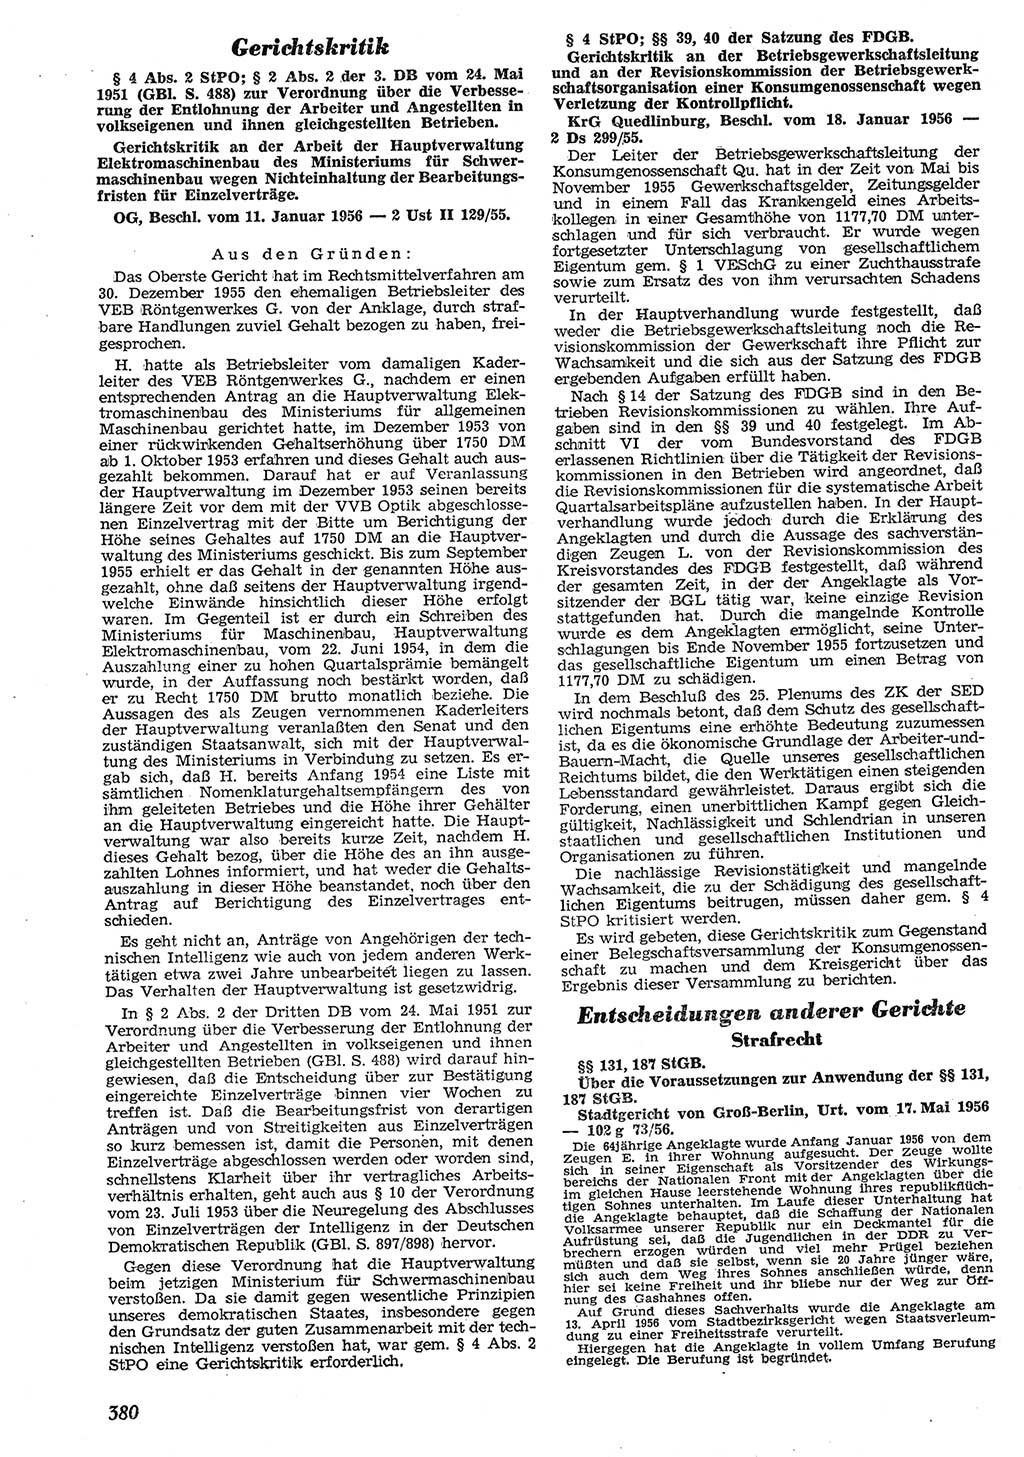 Neue Justiz (NJ), Zeitschrift für Recht und Rechtswissenschaft [Deutsche Demokratische Republik (DDR)], 10. Jahrgang 1956, Seite 380 (NJ DDR 1956, S. 380)